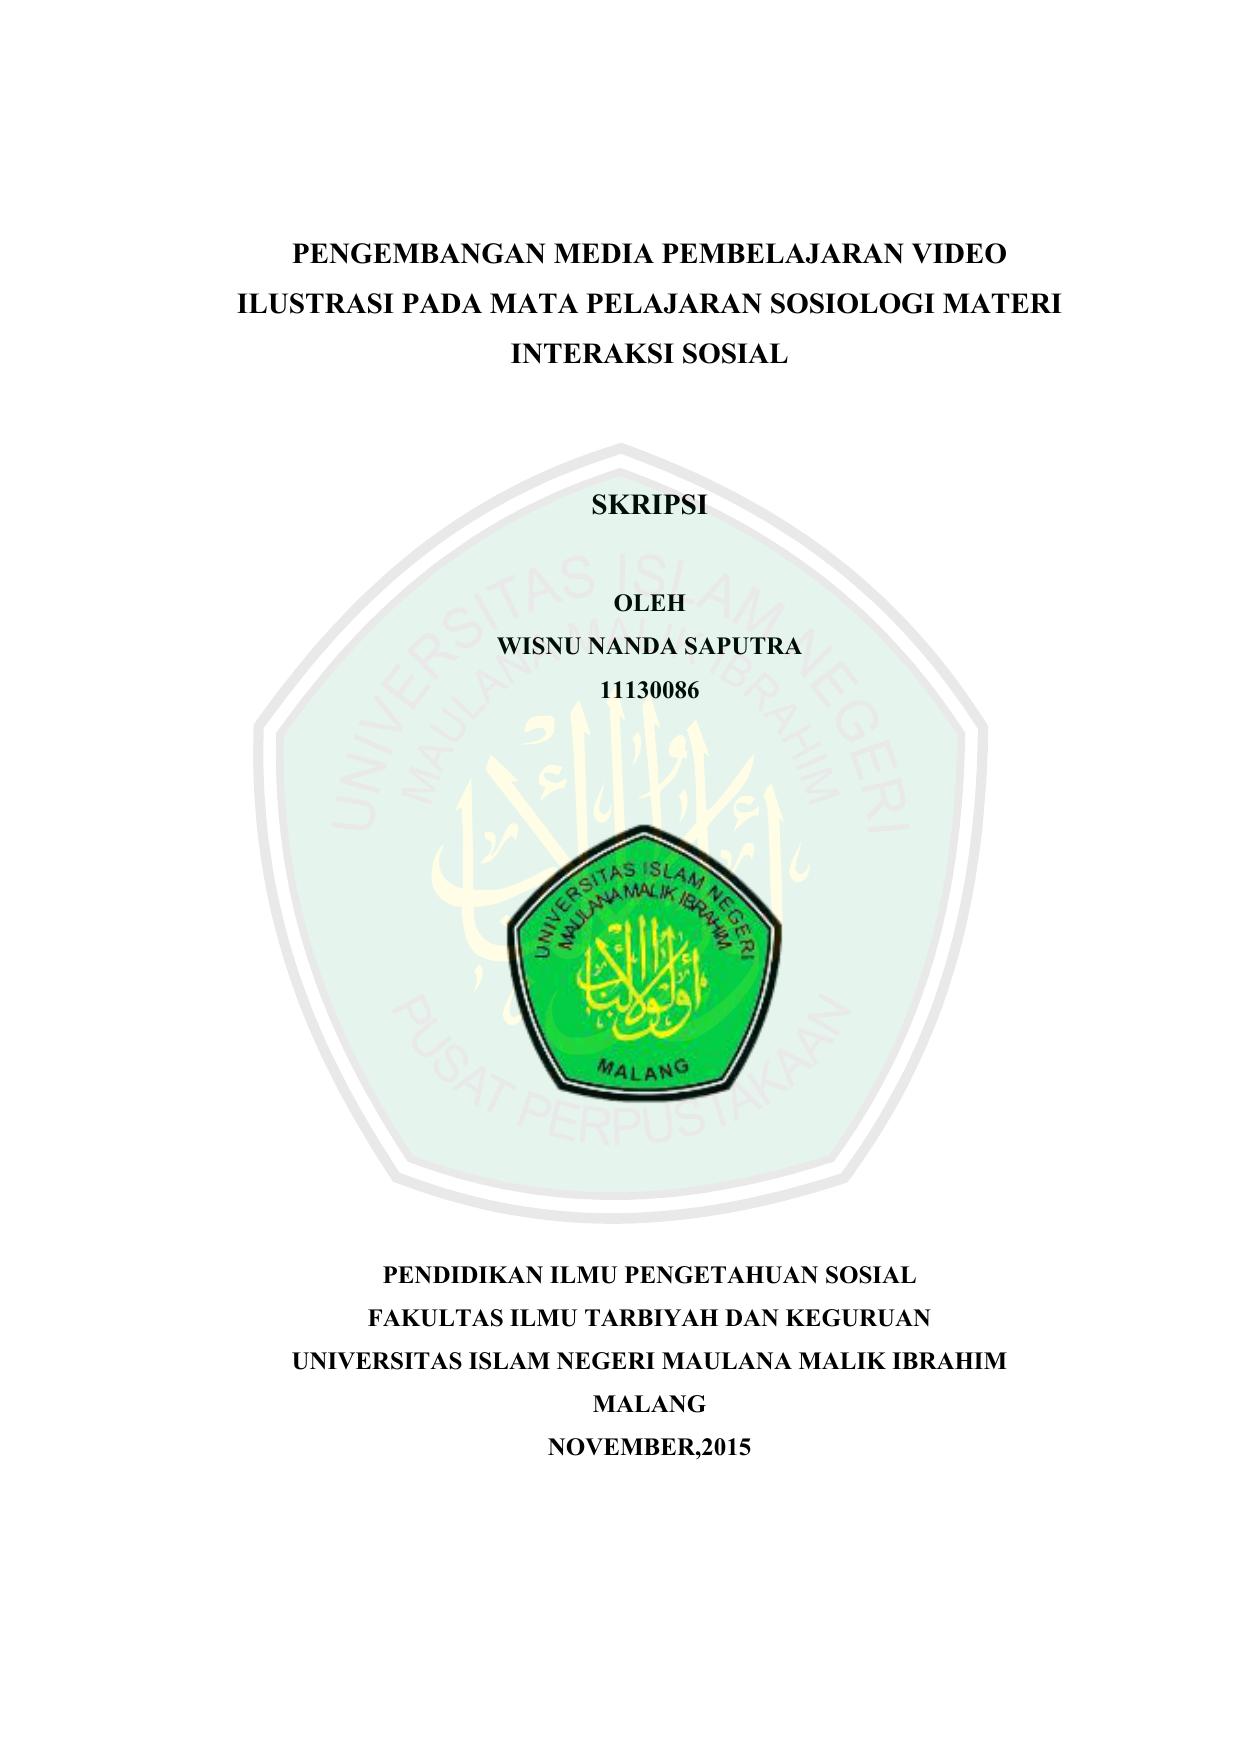 Etheses Of Maulana Malik Ibrahim State Islamic